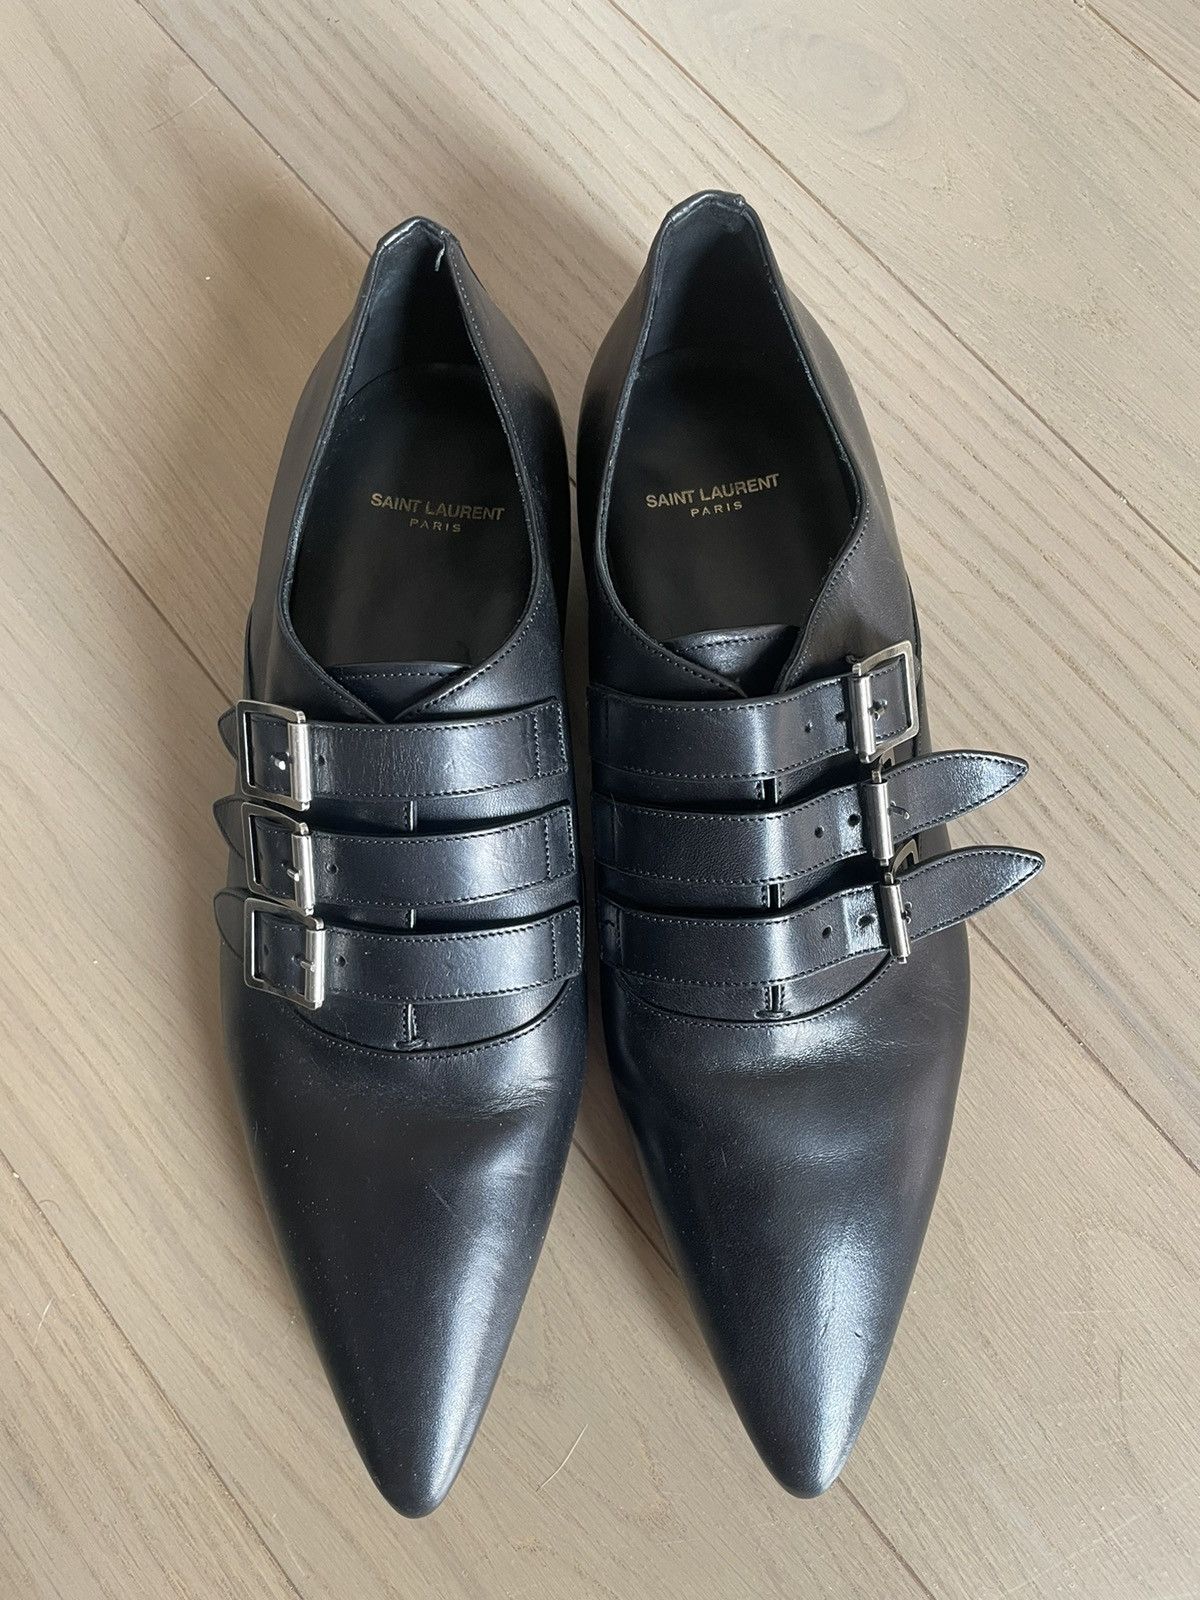 Saint Laurent Paris YSL Monk Strap Shoes Sample | Grailed